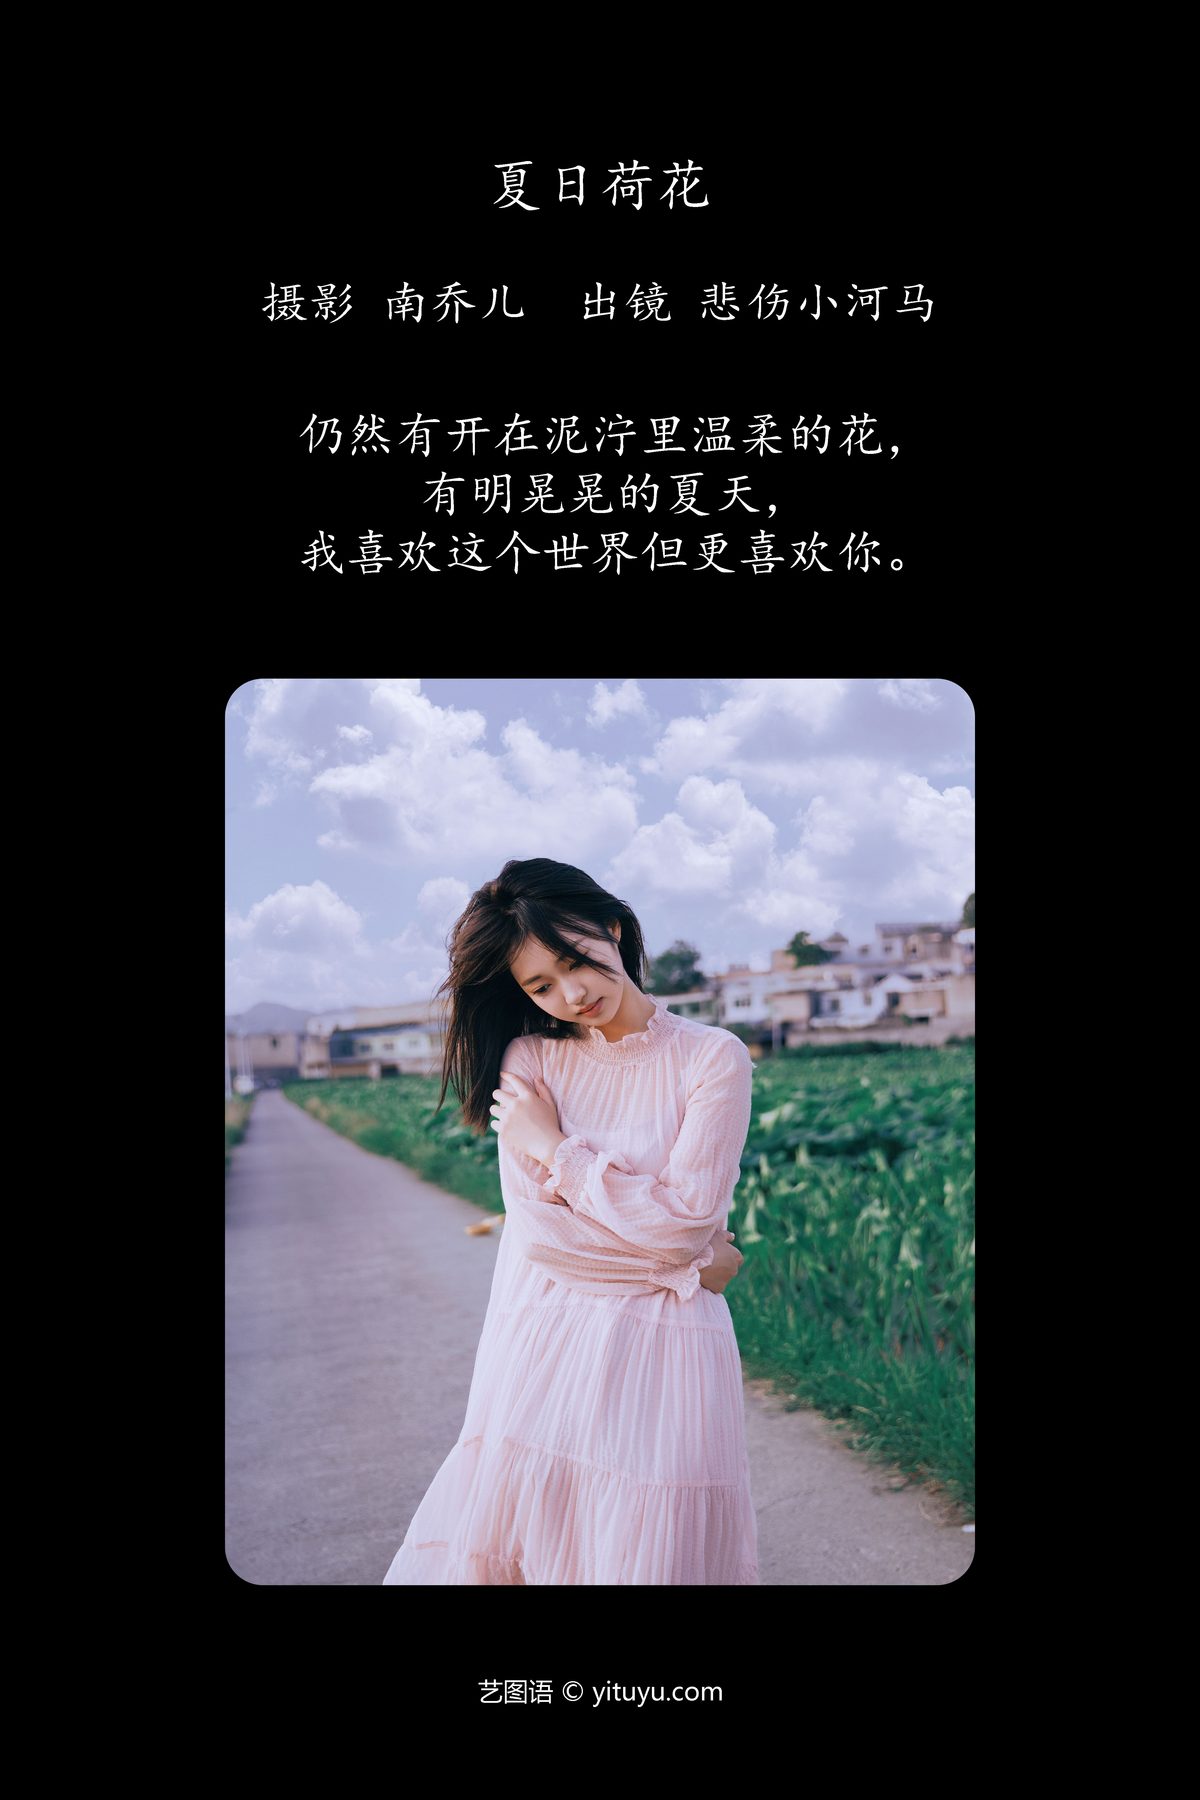 YiTuYu艺图语 Vol 4816 Bei Shang Xiao He Ma 0002 7869604542.jpg